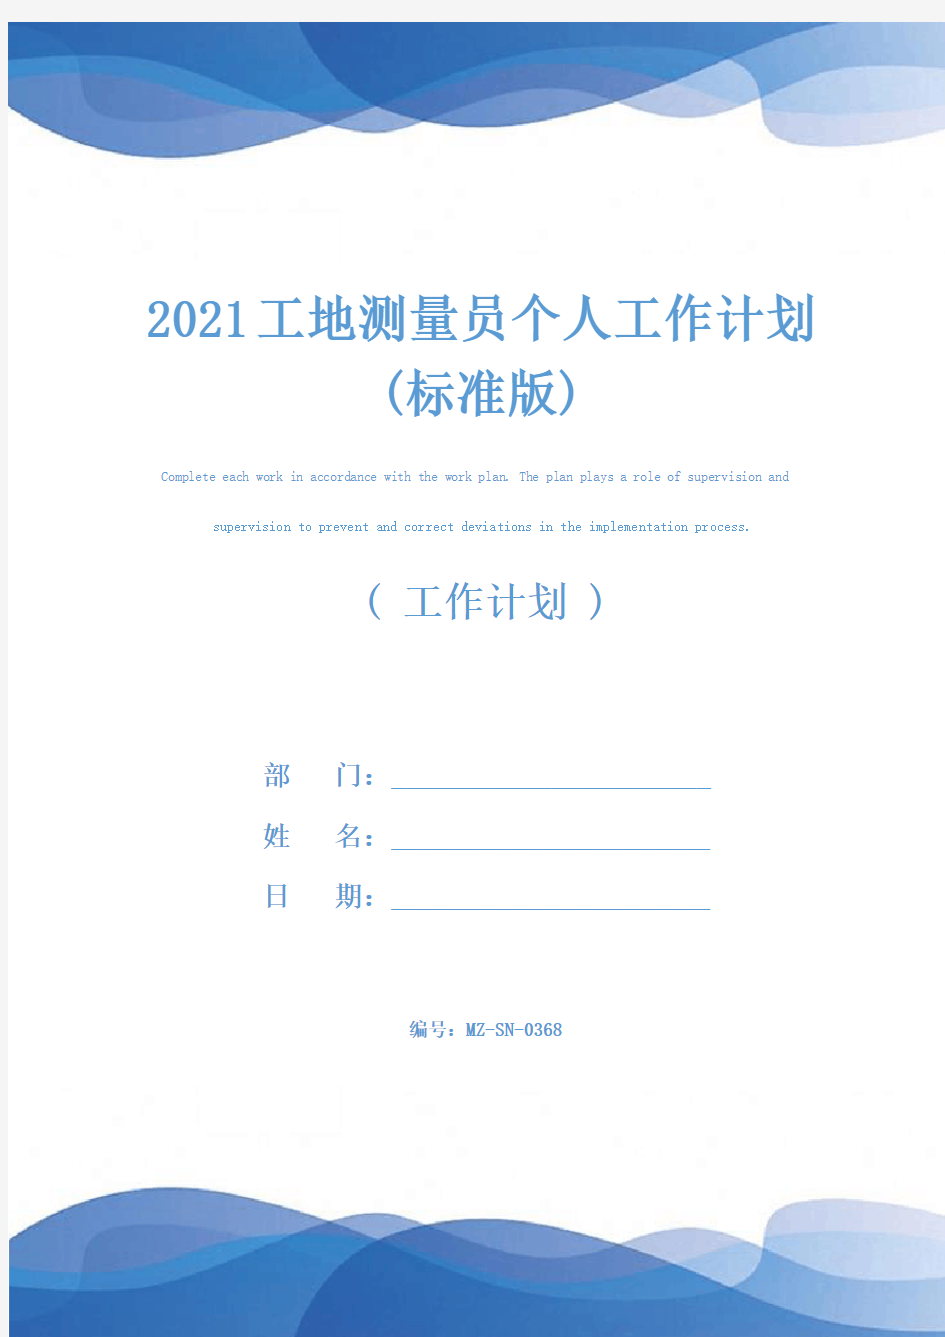 2021工地测量员个人工作计划(标准版)